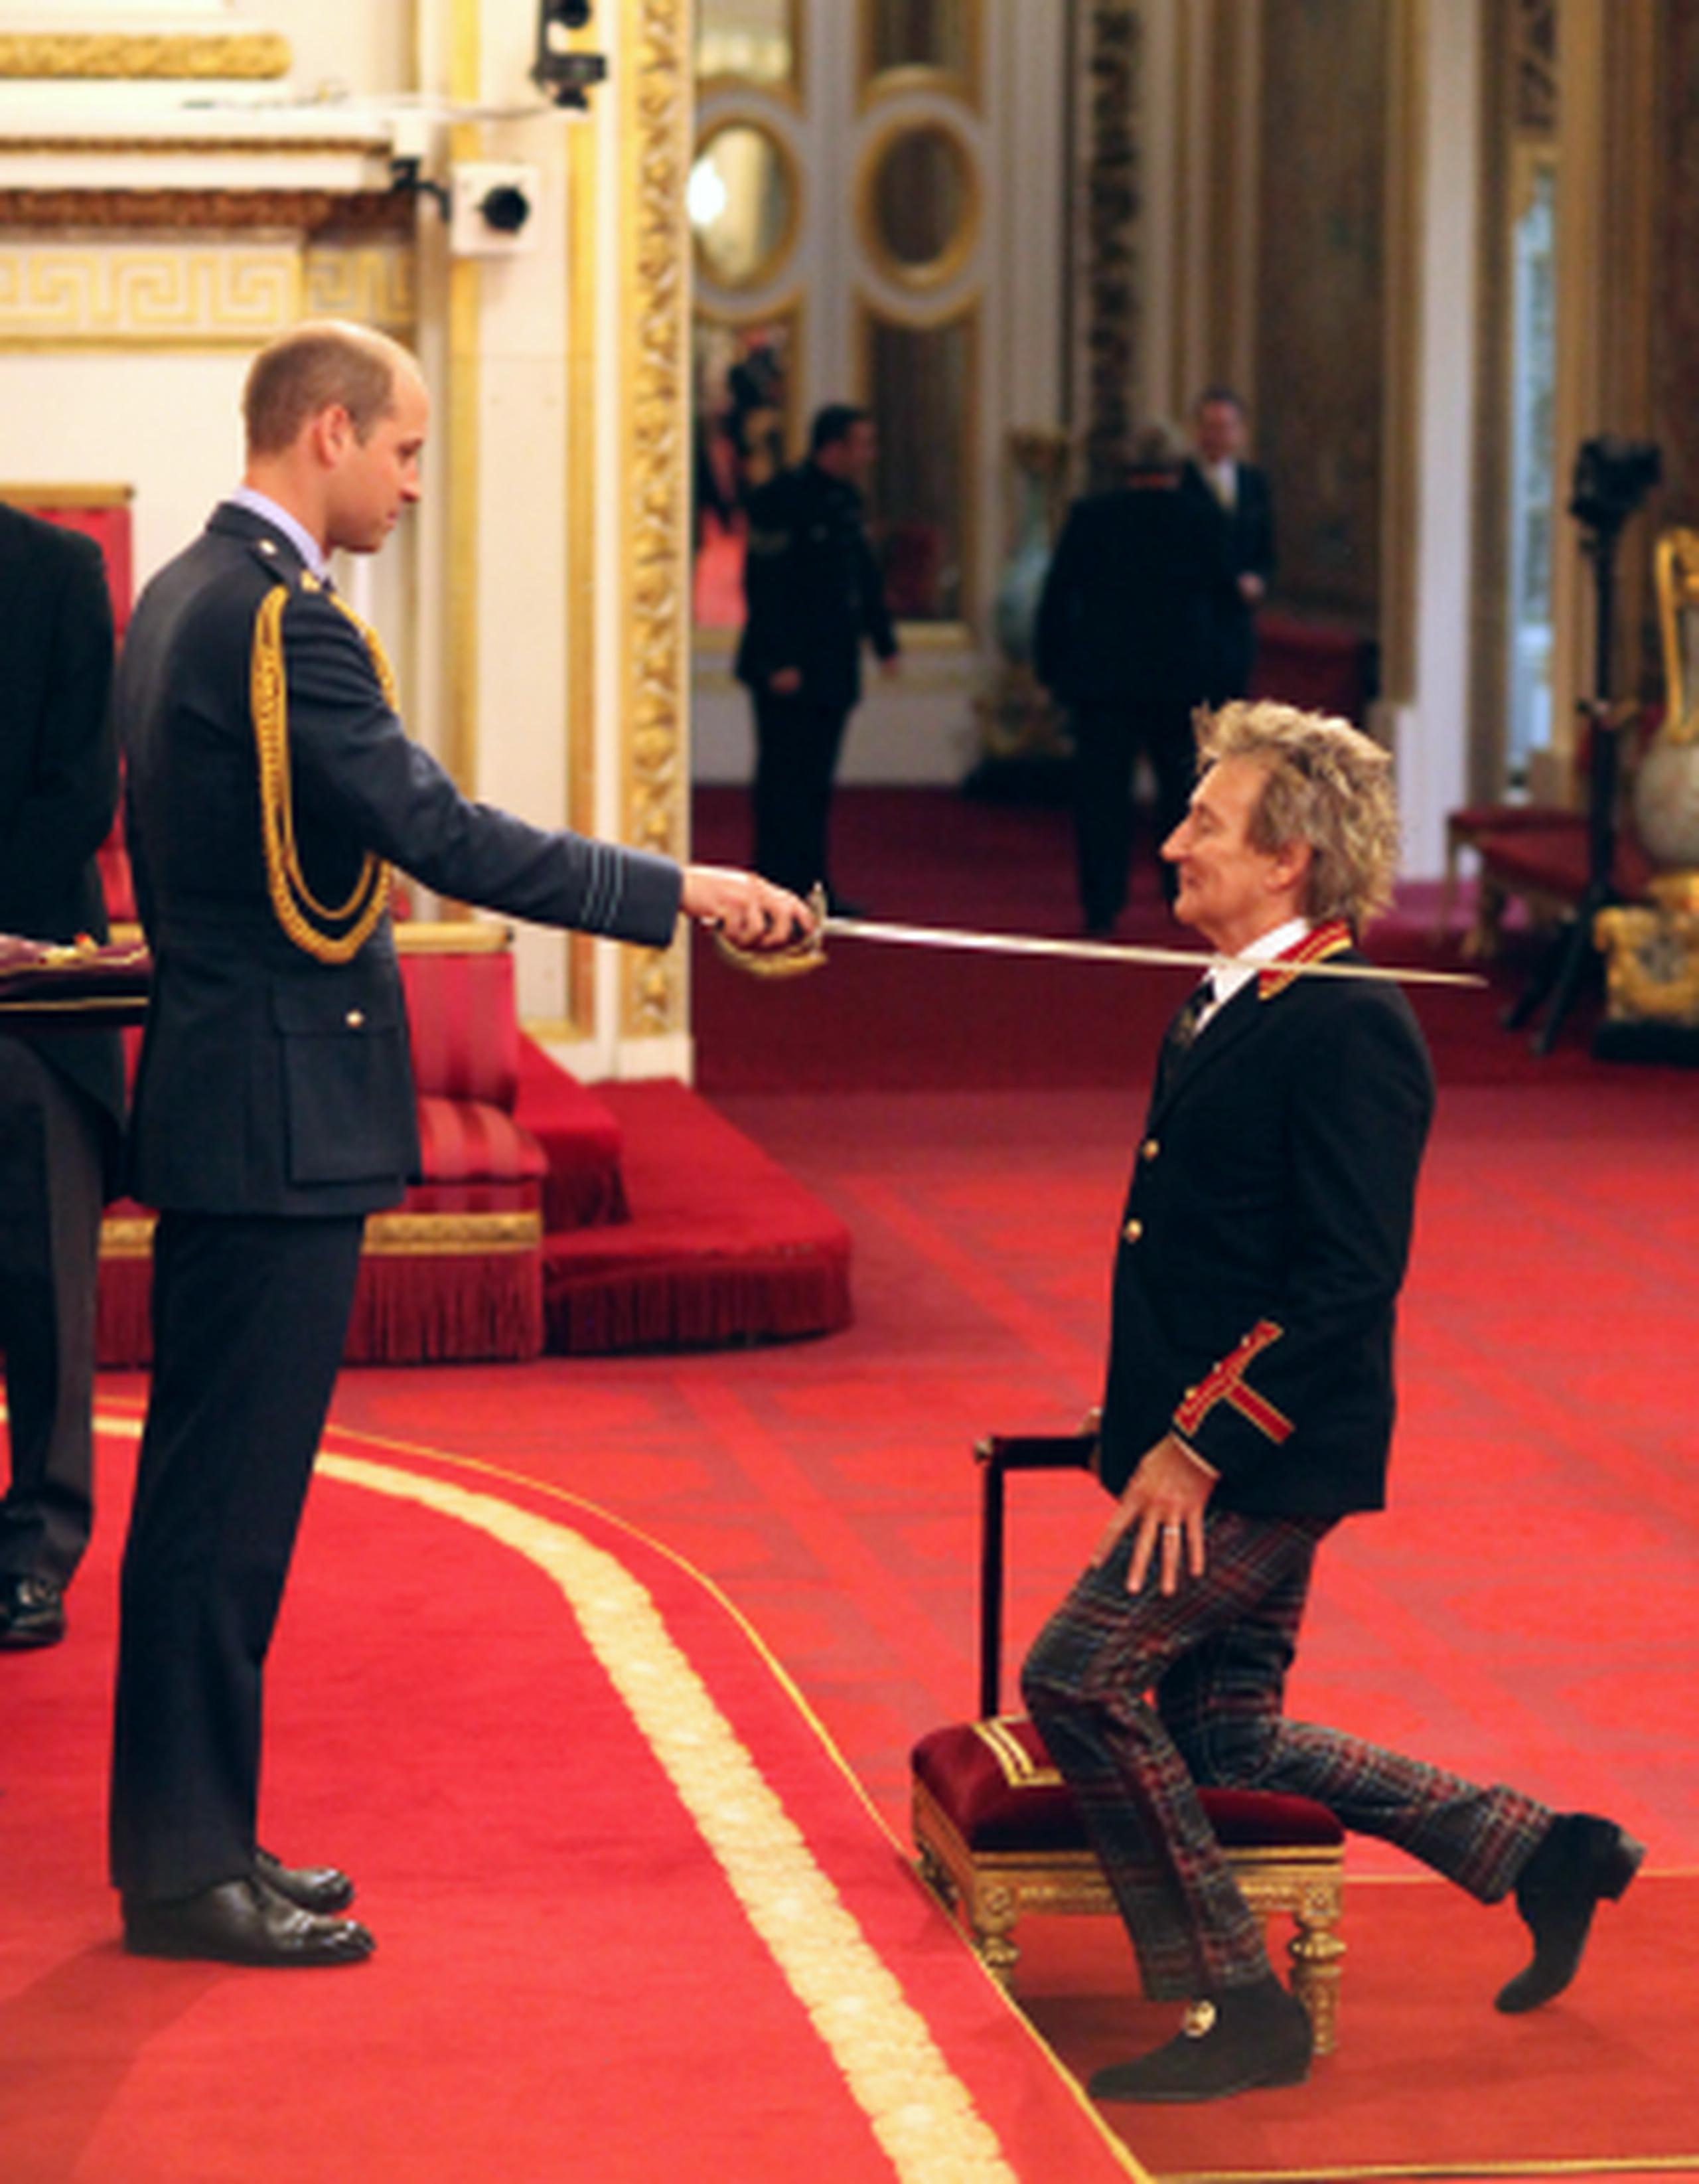 El príncipe William realiza la ceremonia en la que invistió al cantante Rod Stewart (derecha), en el palacio de Buckingham.  (Jonathan Brady/PA via AP)
